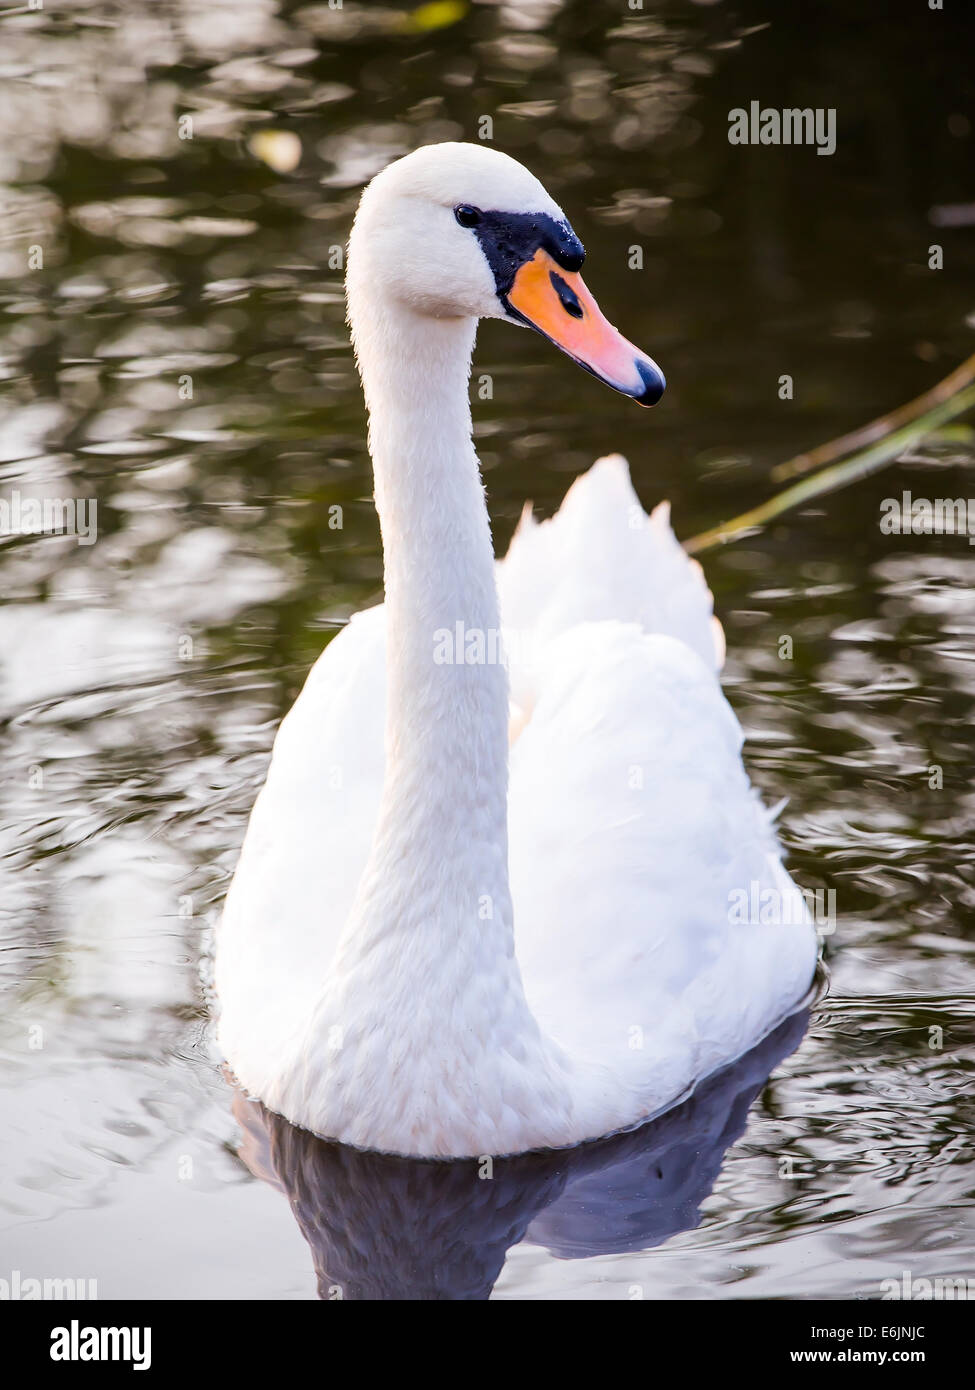 Majestic swan galleggianti sulla superficie dell'acqua Foto Stock